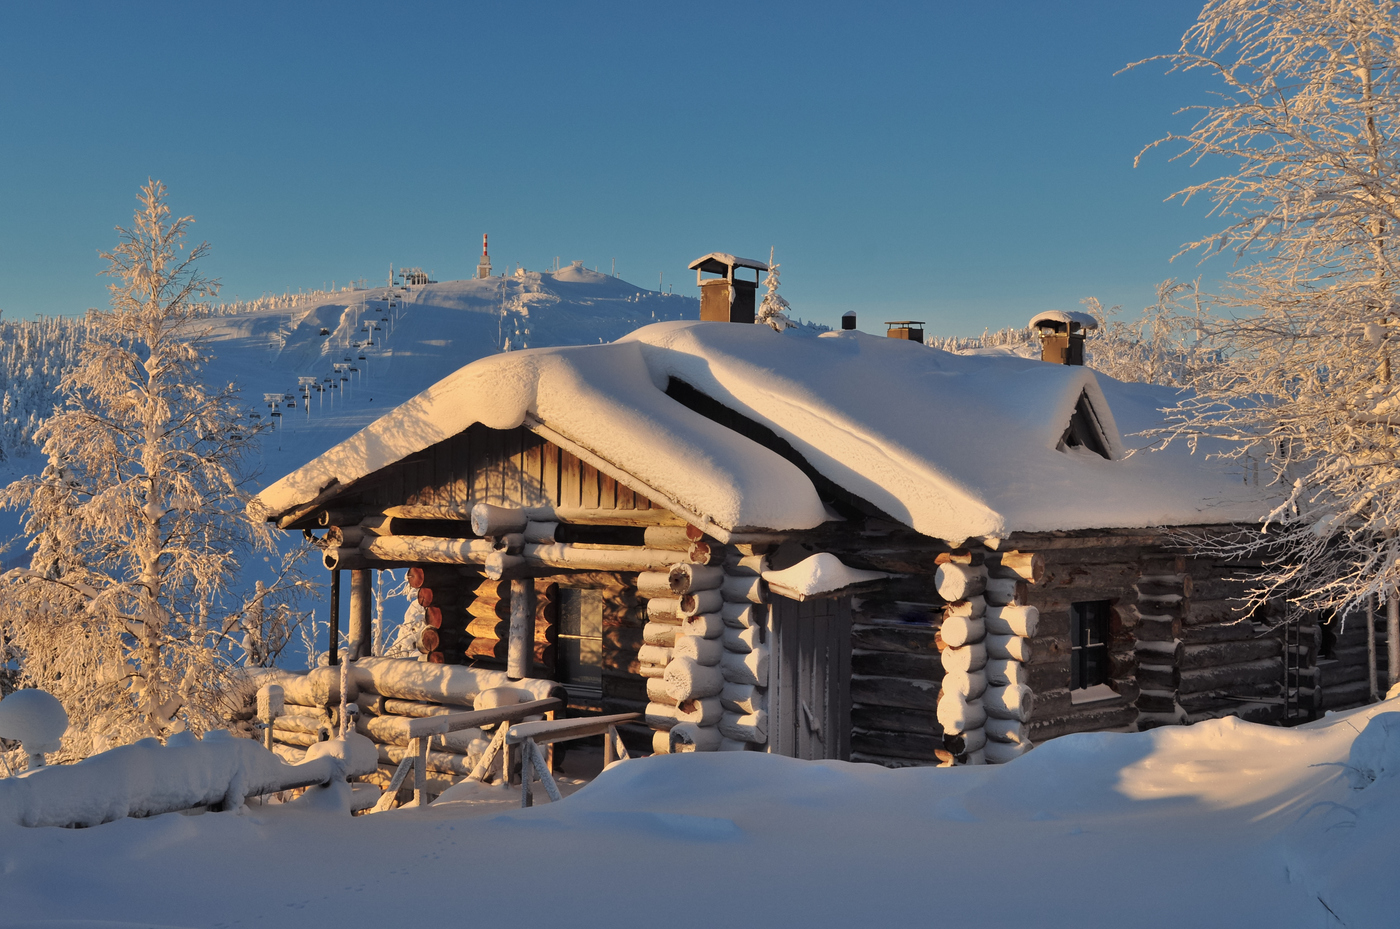 Ձմեռային գեղեցիկ լուսանկար. Առավոտյան եւ խրճիթ